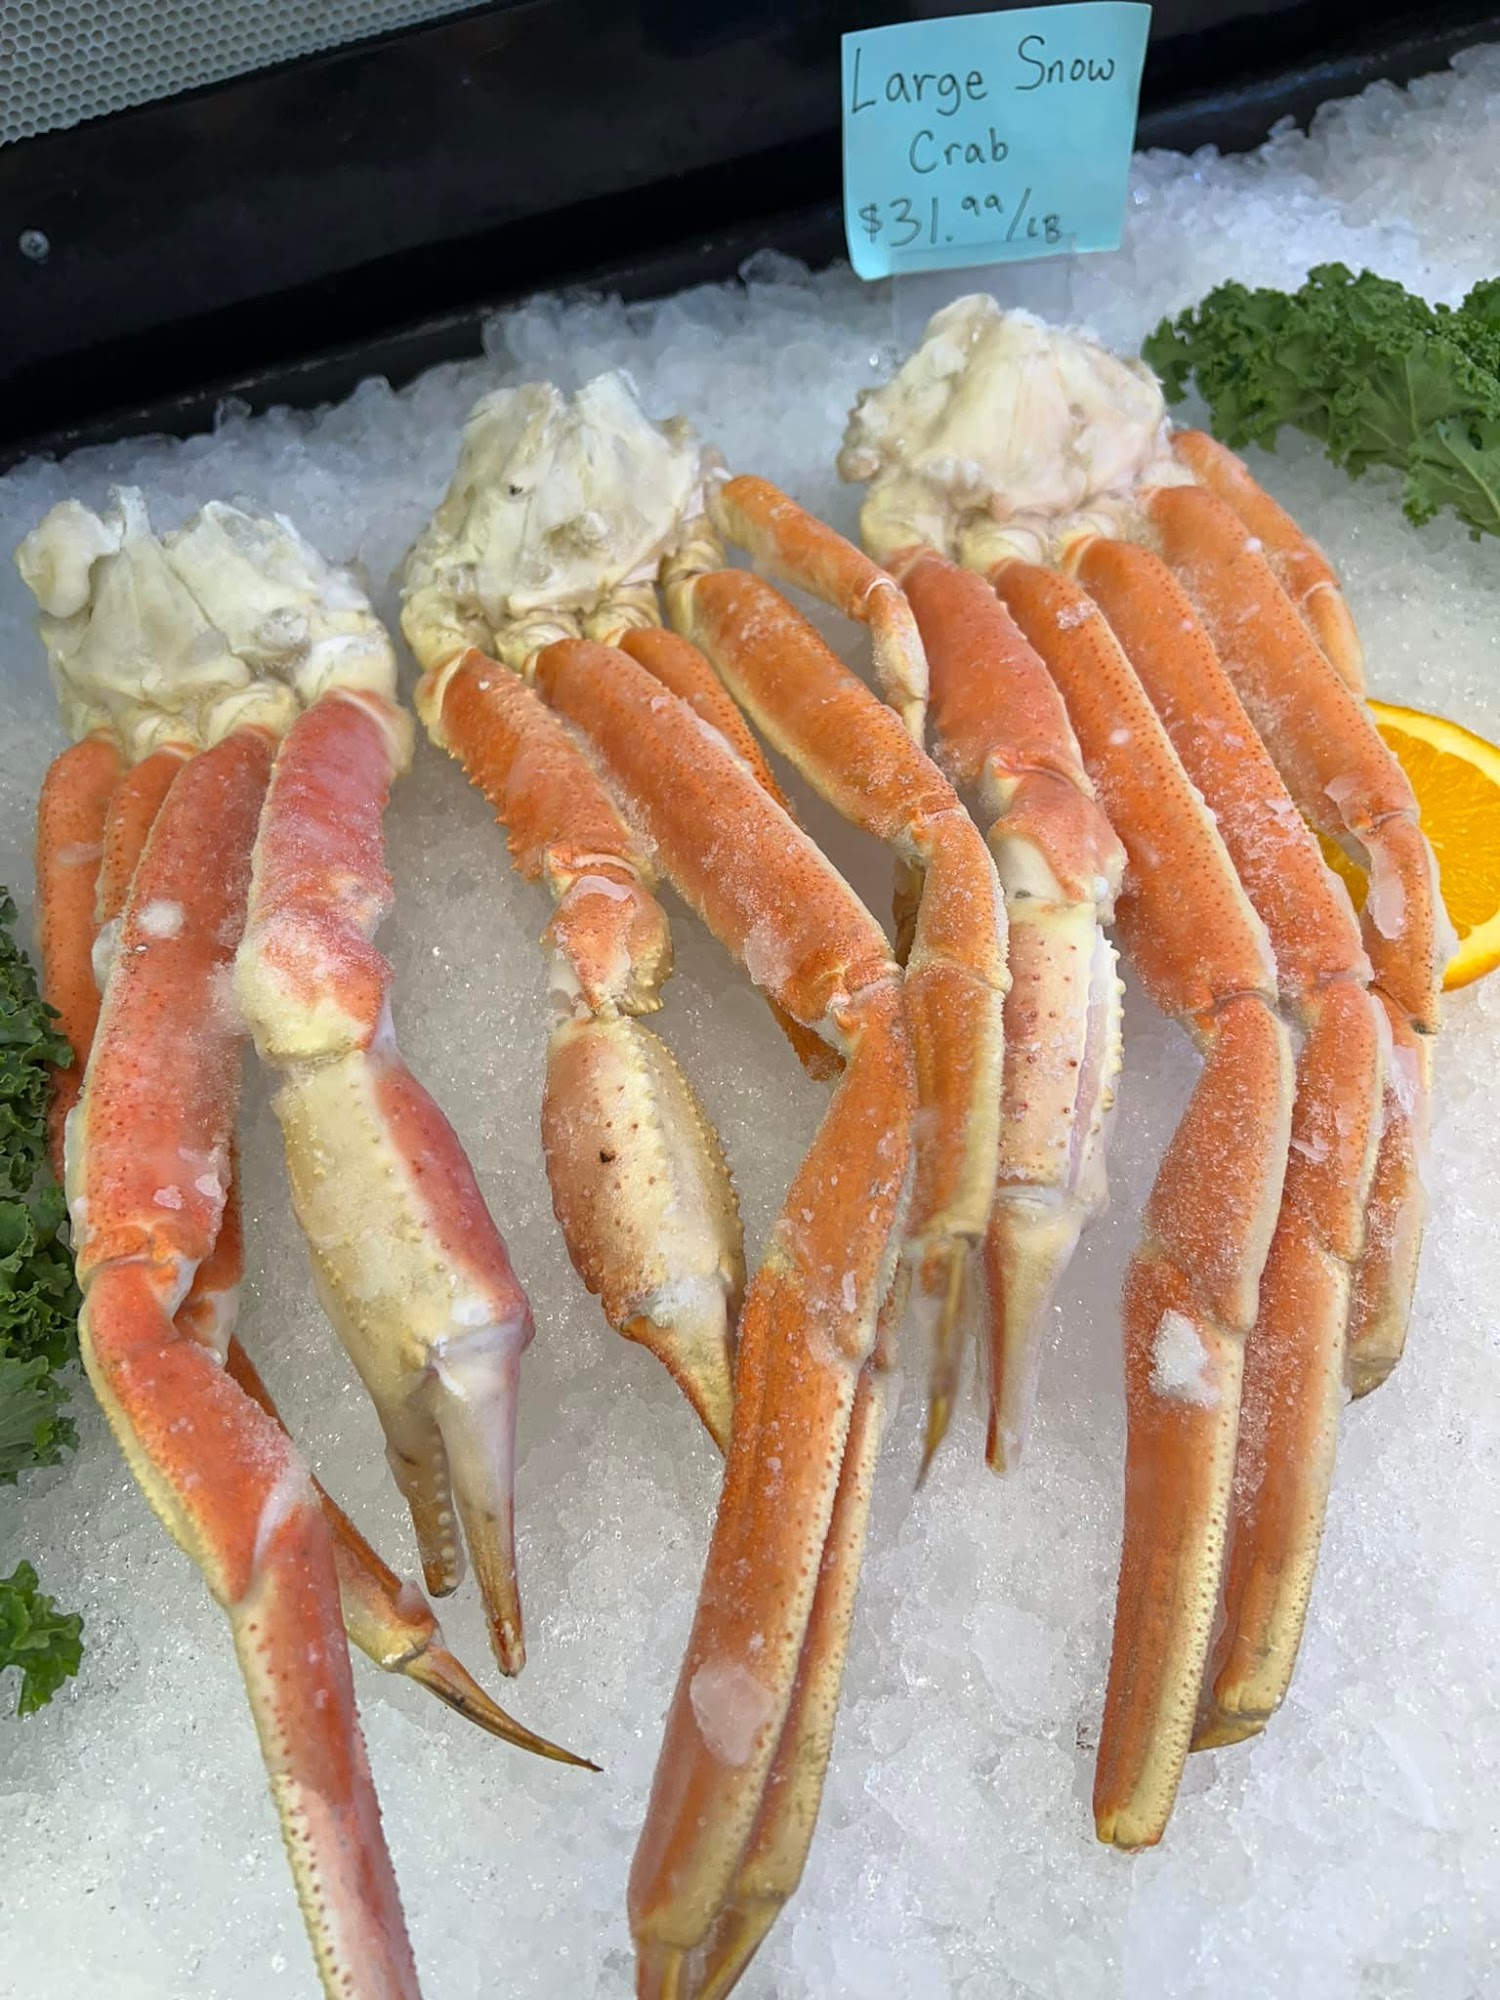 Cajun Crab House Seafood Market